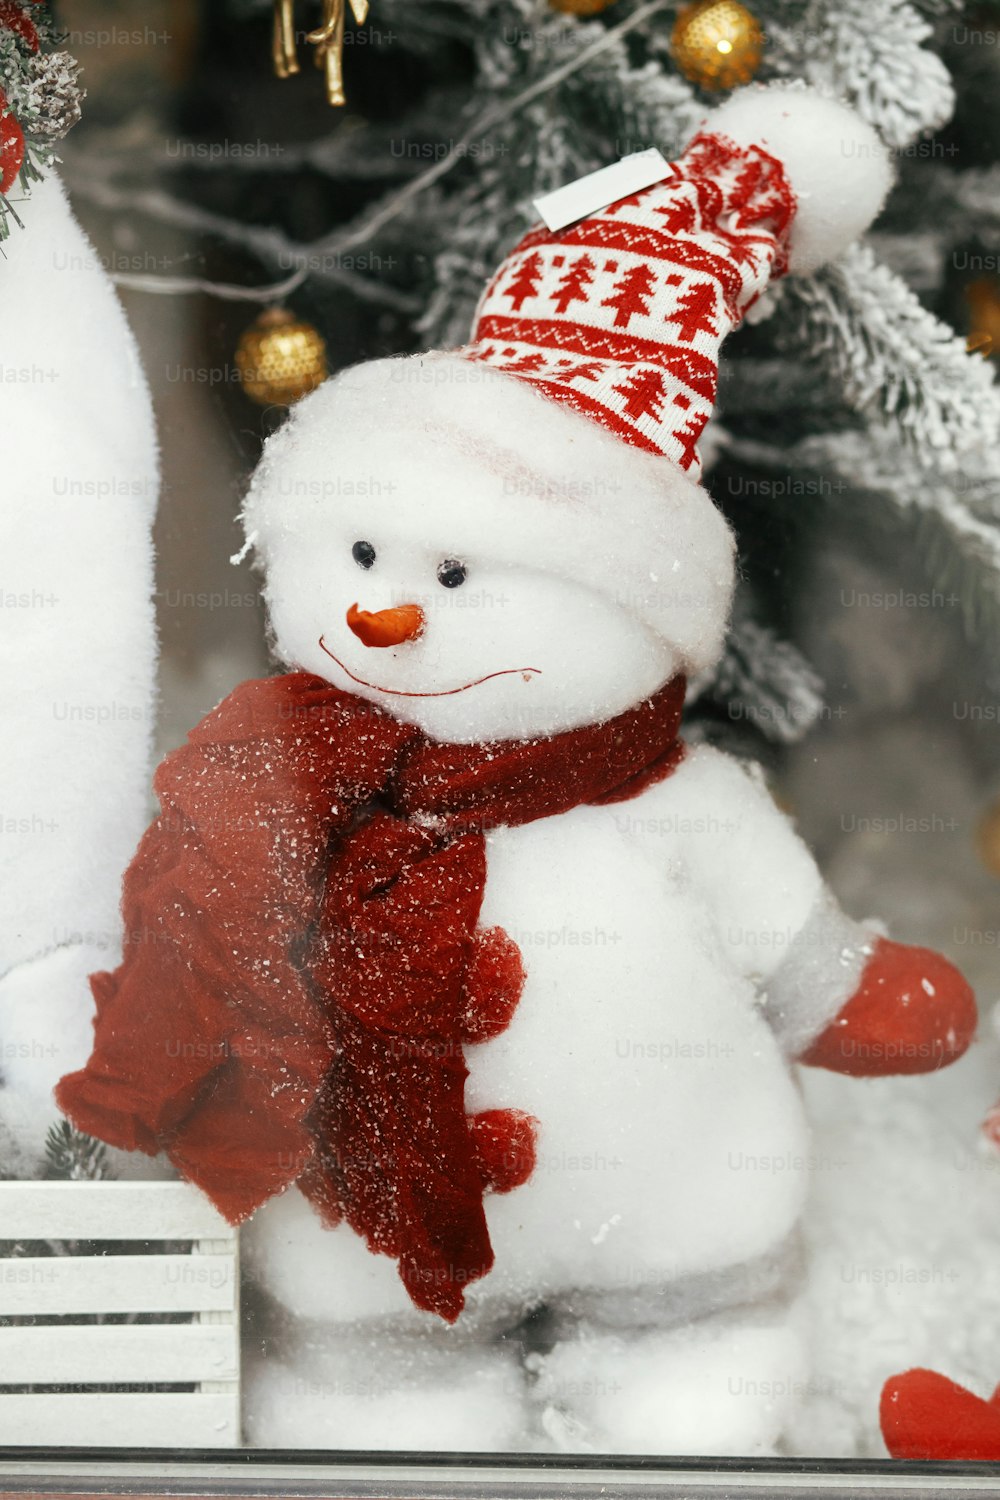 Lindo muñeco de nieve con estilo en sombrero y con bufanda de juguete debajo del árbol de Navidad moderno. Decoración festiva navideña para las vacaciones de invierno en la calle de la ciudad europea. ¡Feliz Navidad!